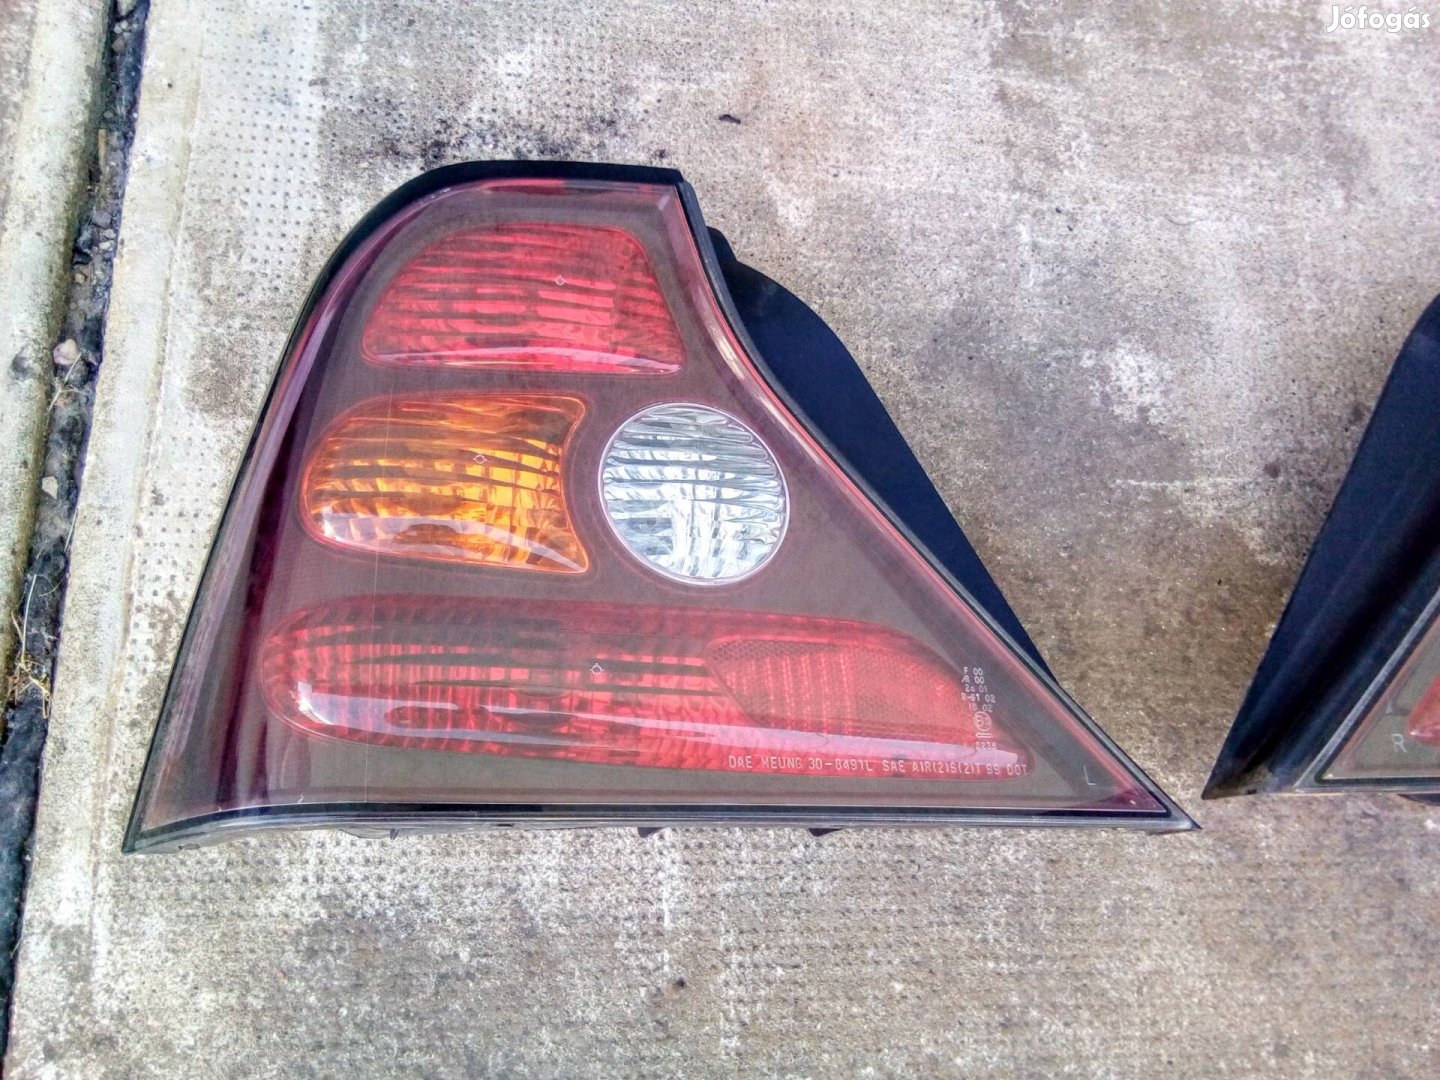 Daewoo Chevrolet Evanda, bal hátsó lámpa.